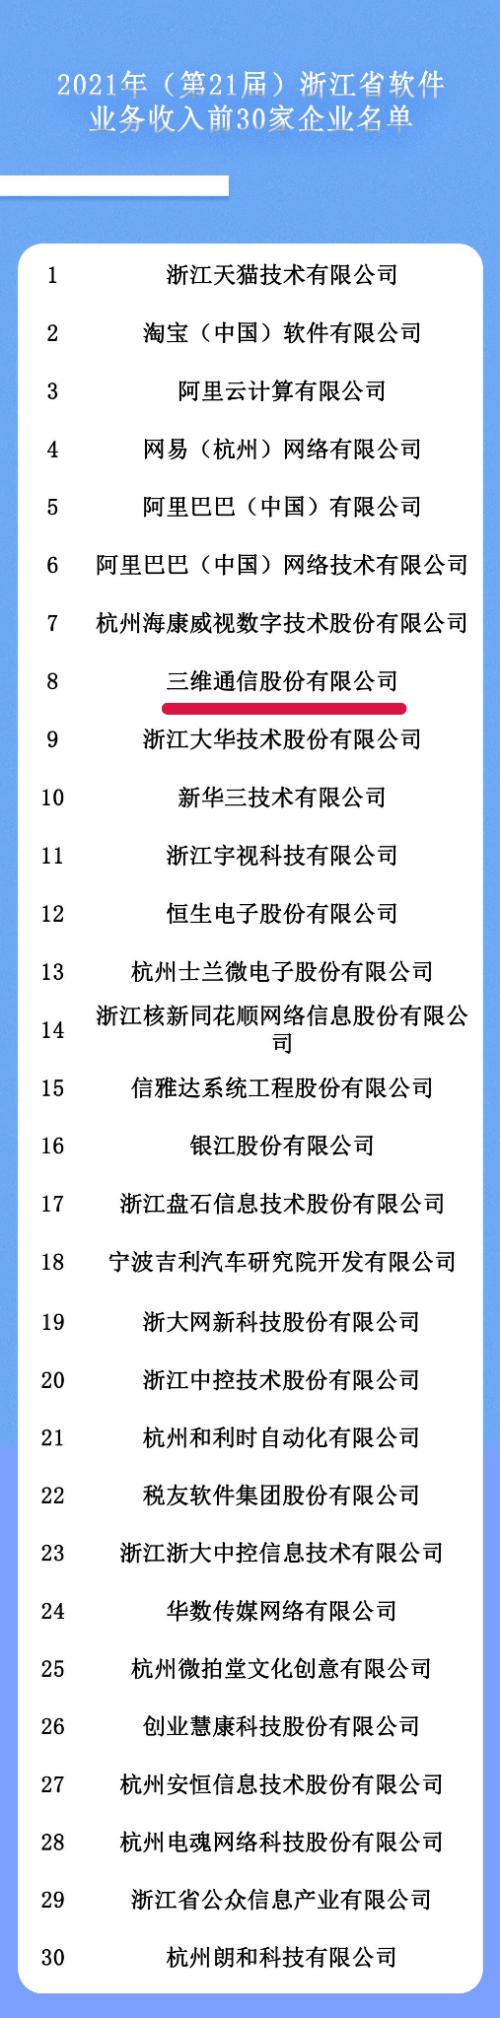 三维通信：入选2021年浙江省电子信息产业百家重点企业名单